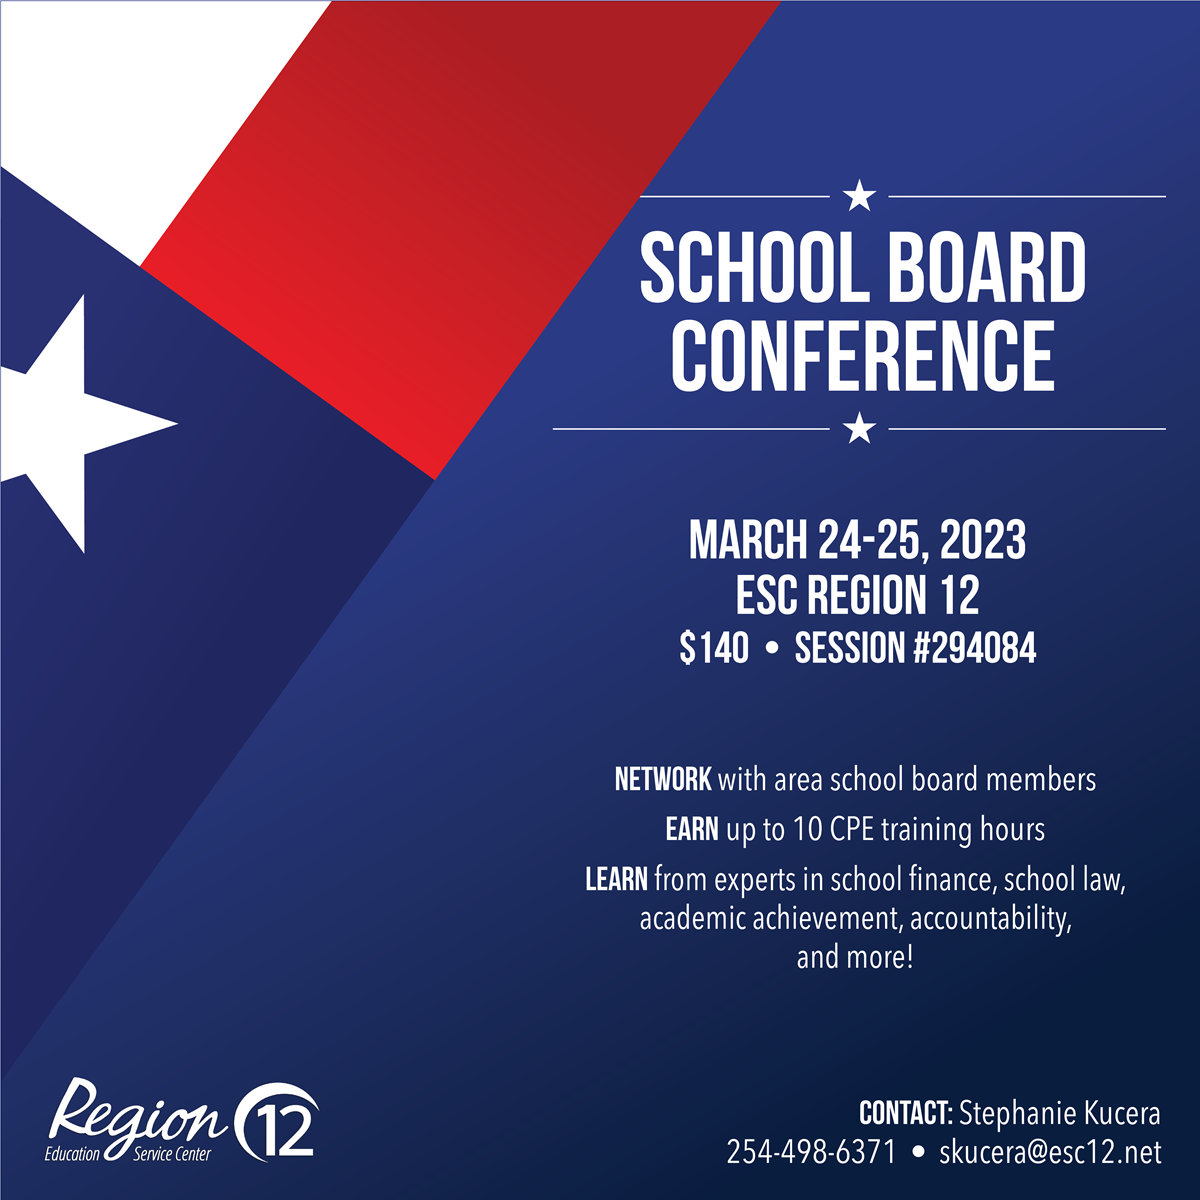 School Board Conference
March 24-25, 2023
ESC Region 12
$140
Session #294084